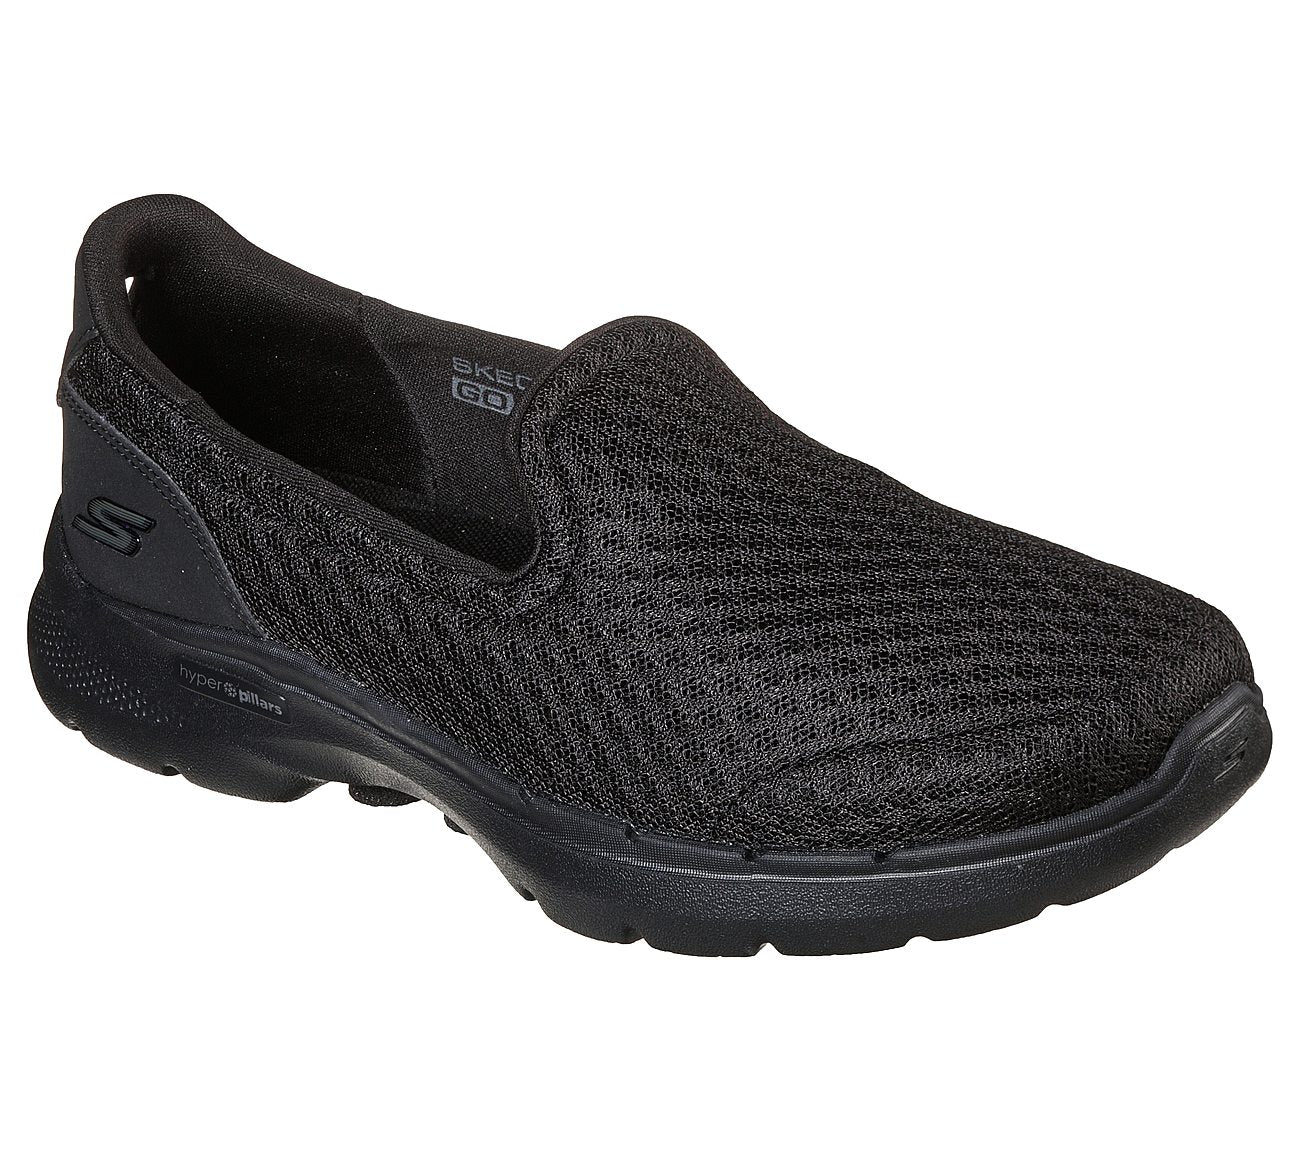 Skechers Go Walk 6 - big splash - black - Kirbys Footwear Ltd